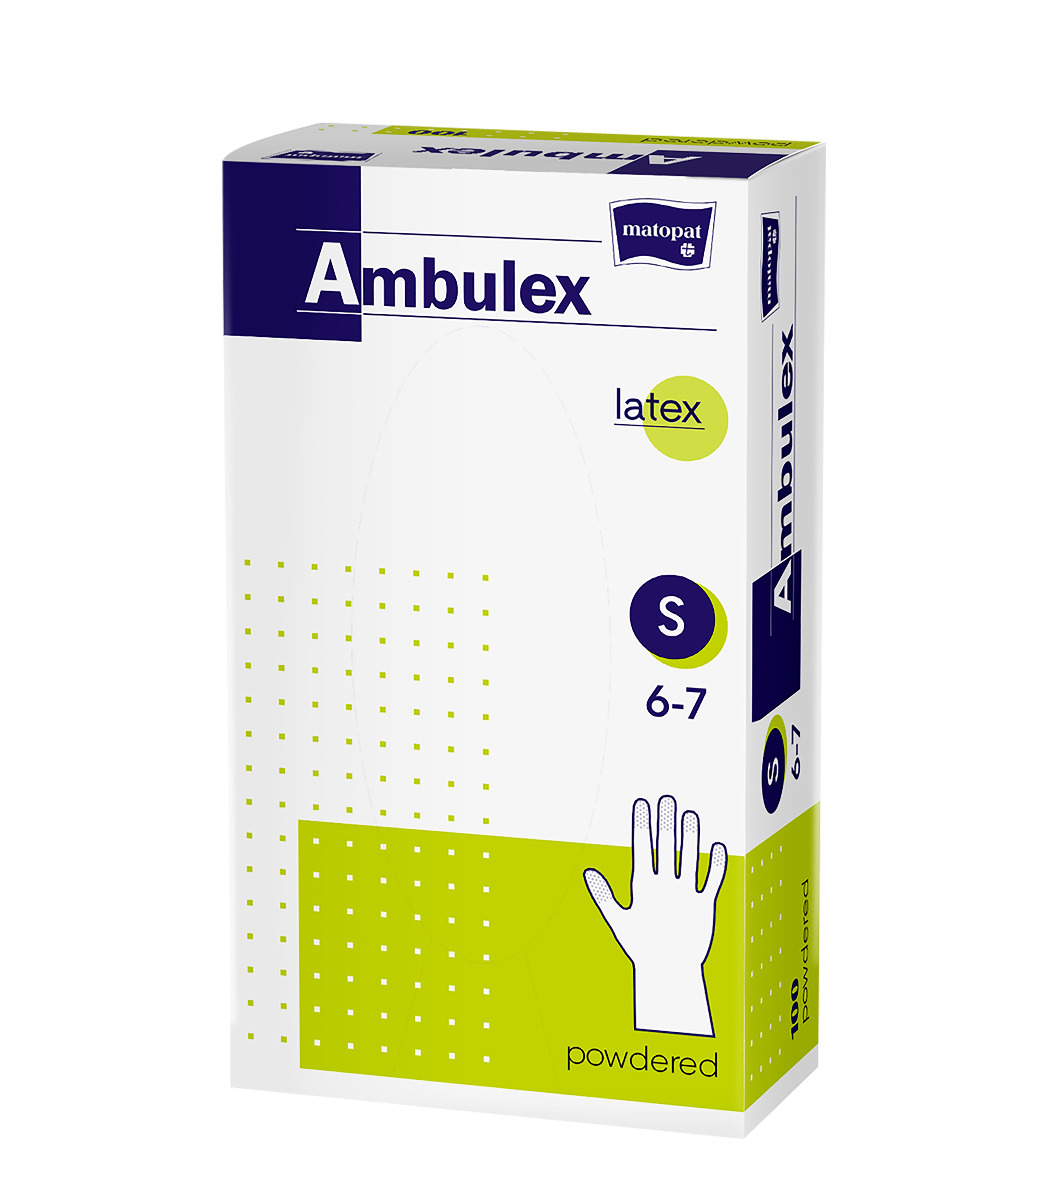 Ambulex Latexové rukavice pudrované nesterilní vel. S 100 ks Ambulex